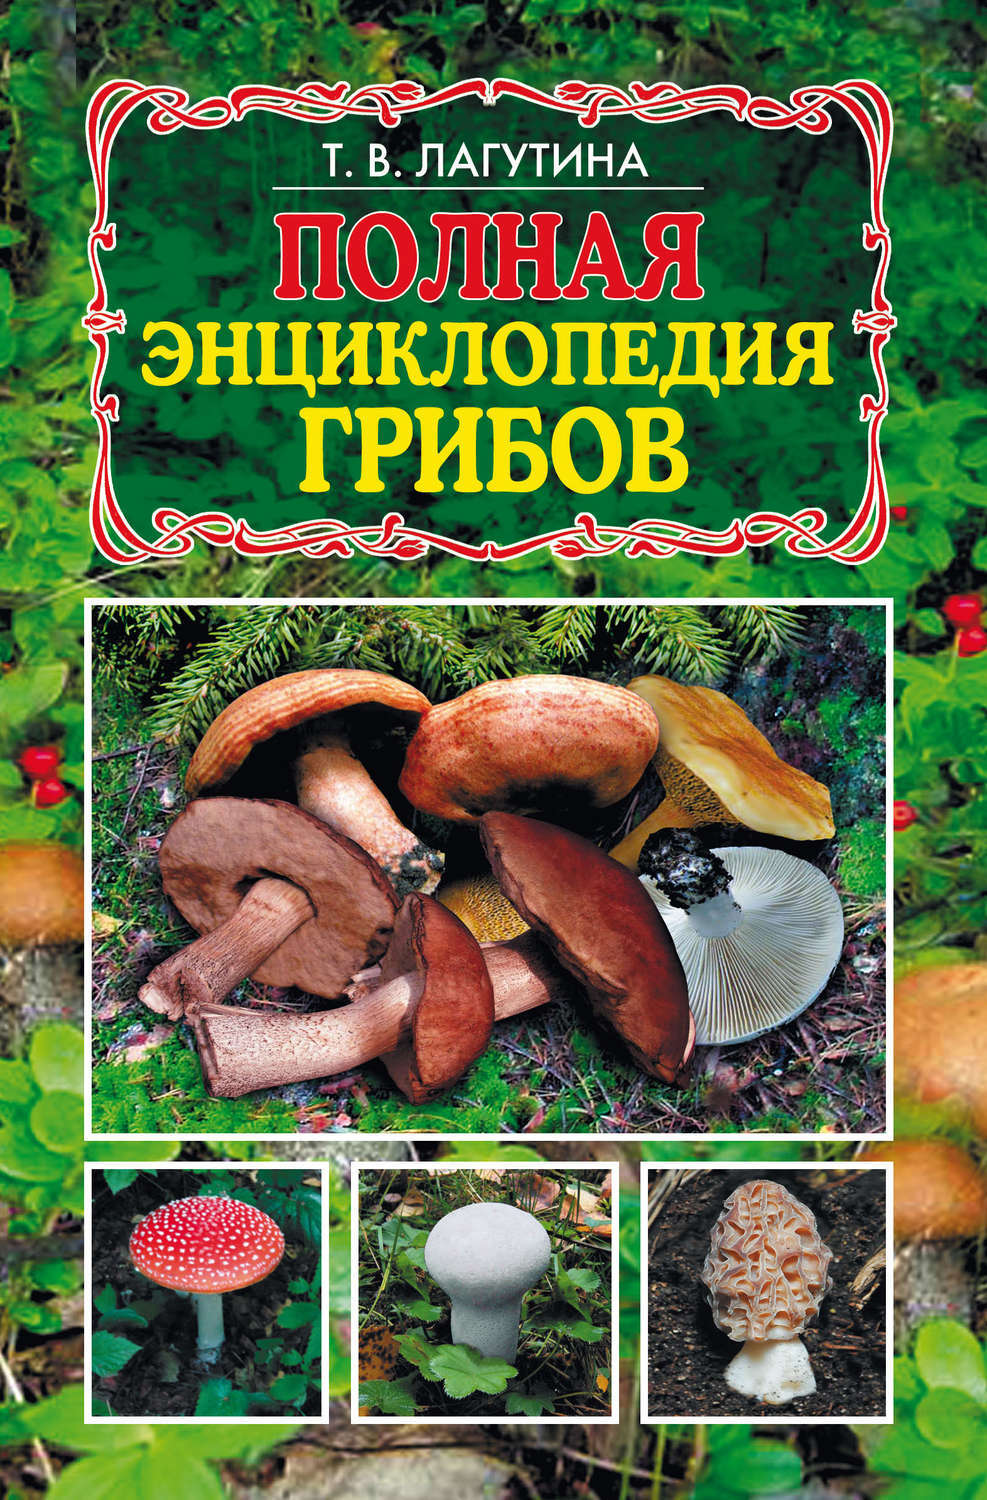 Борщи с грибами, 44 рецепта, фото-рецепты